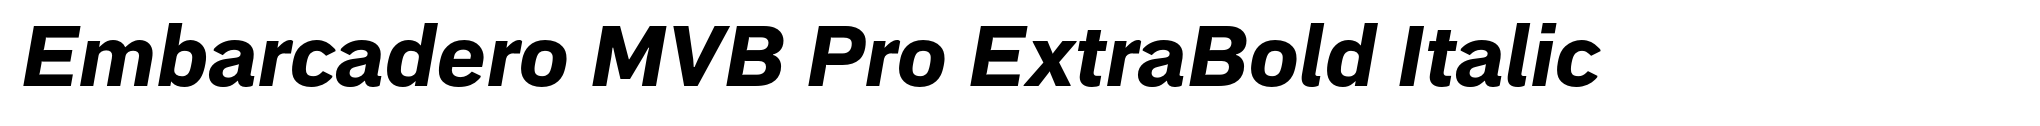 Embarcadero MVB Pro ExtraBold Italic image